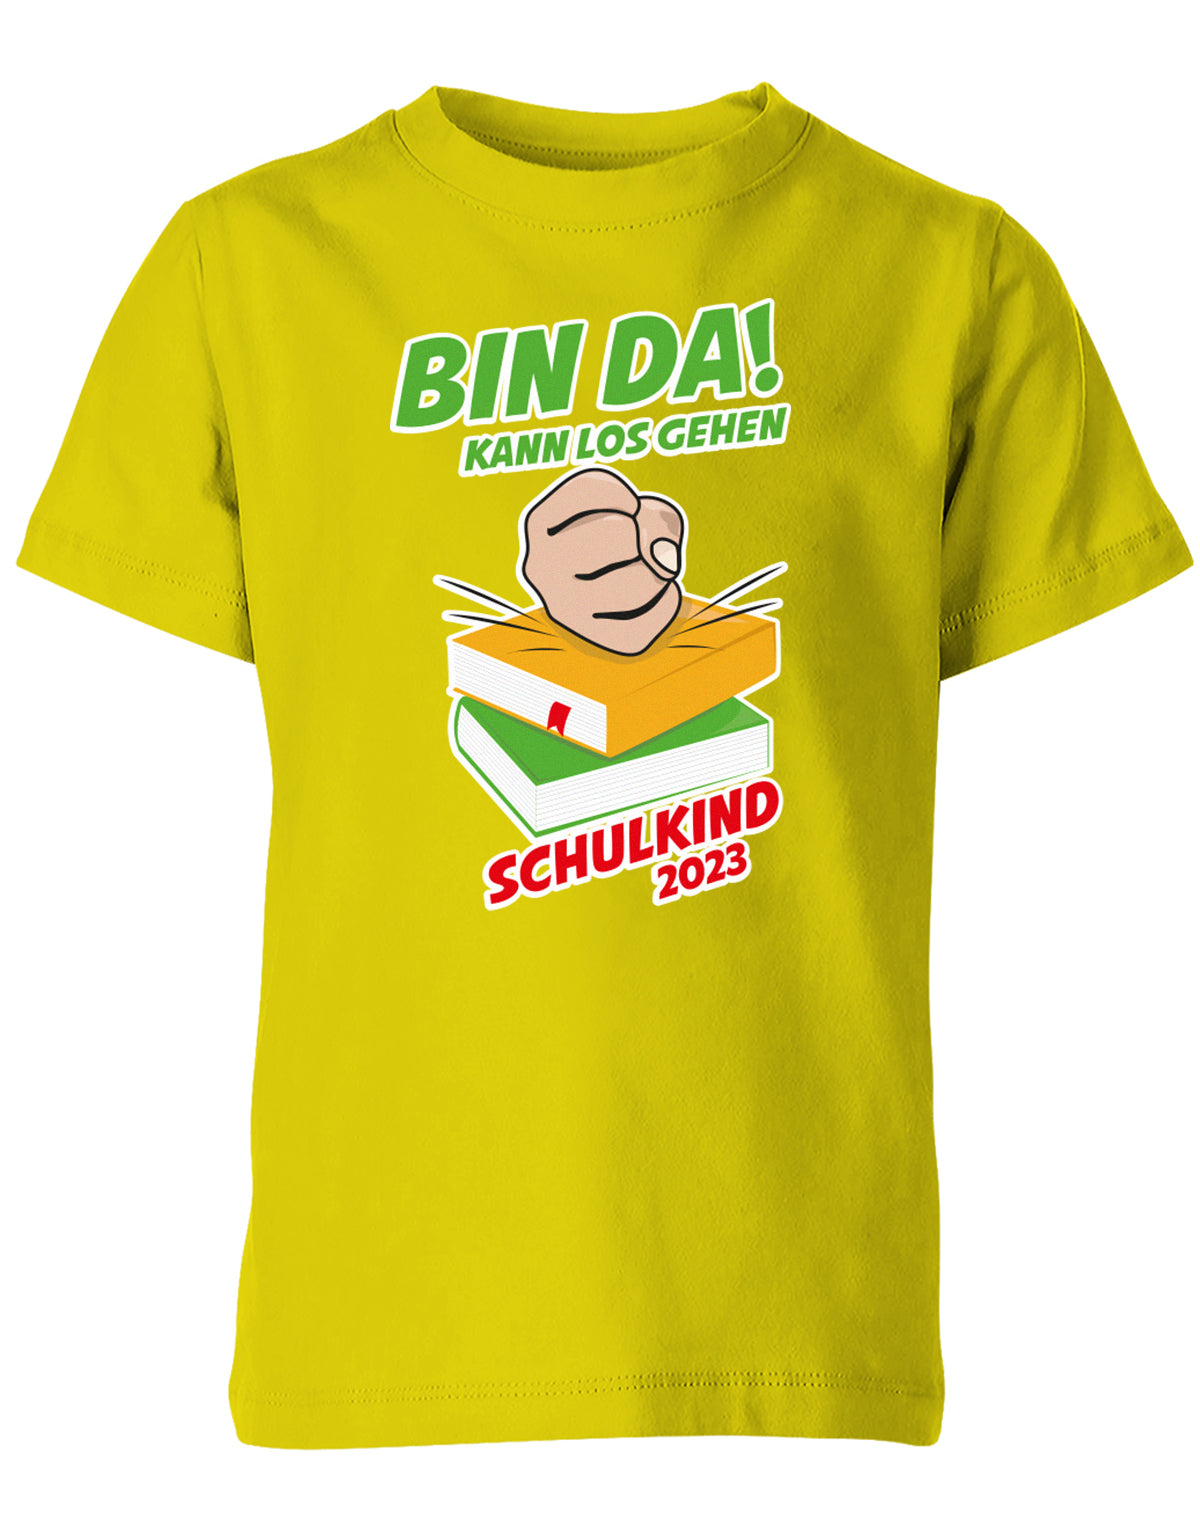 Bin Da kann los gehen Faust auf Bücher Schulkind 2023 - Einschulung Kinder T Shirt Gelb